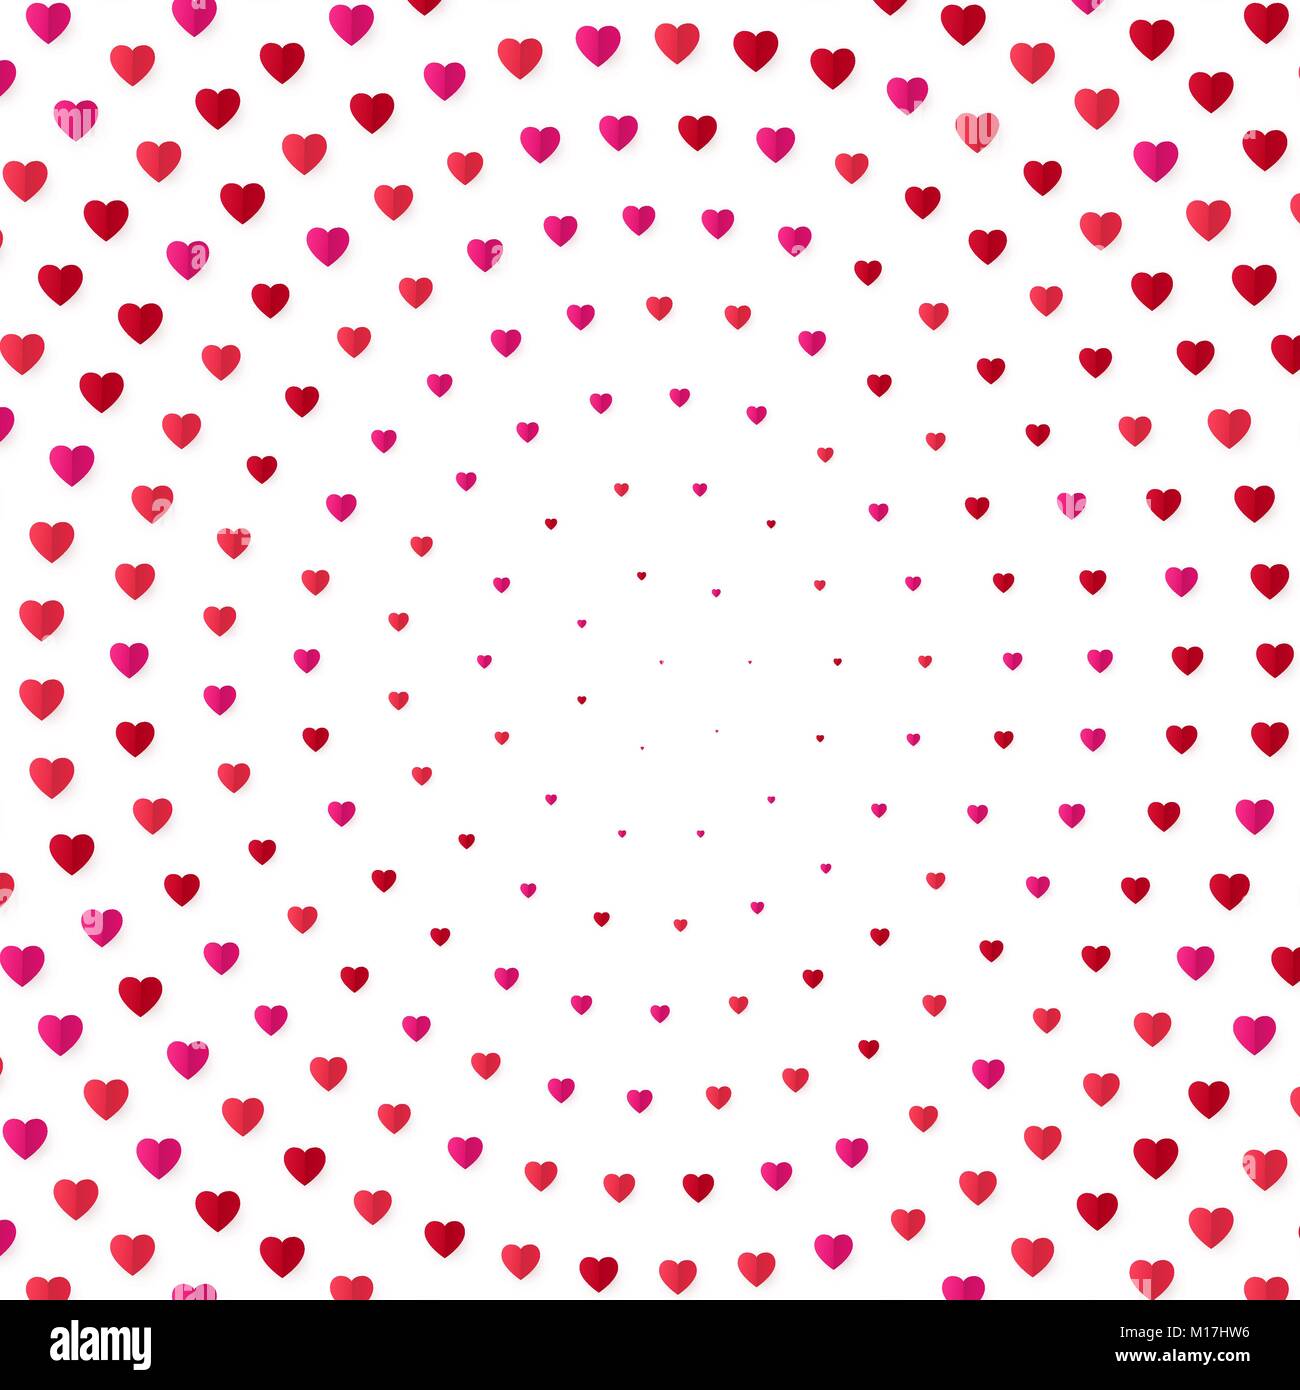 Herz halftone Farbe Hintergrund. Valentines Tag und Hochzeit Einladungskarte, Romantik und Liebe. Vector Illustration Stock Vektor